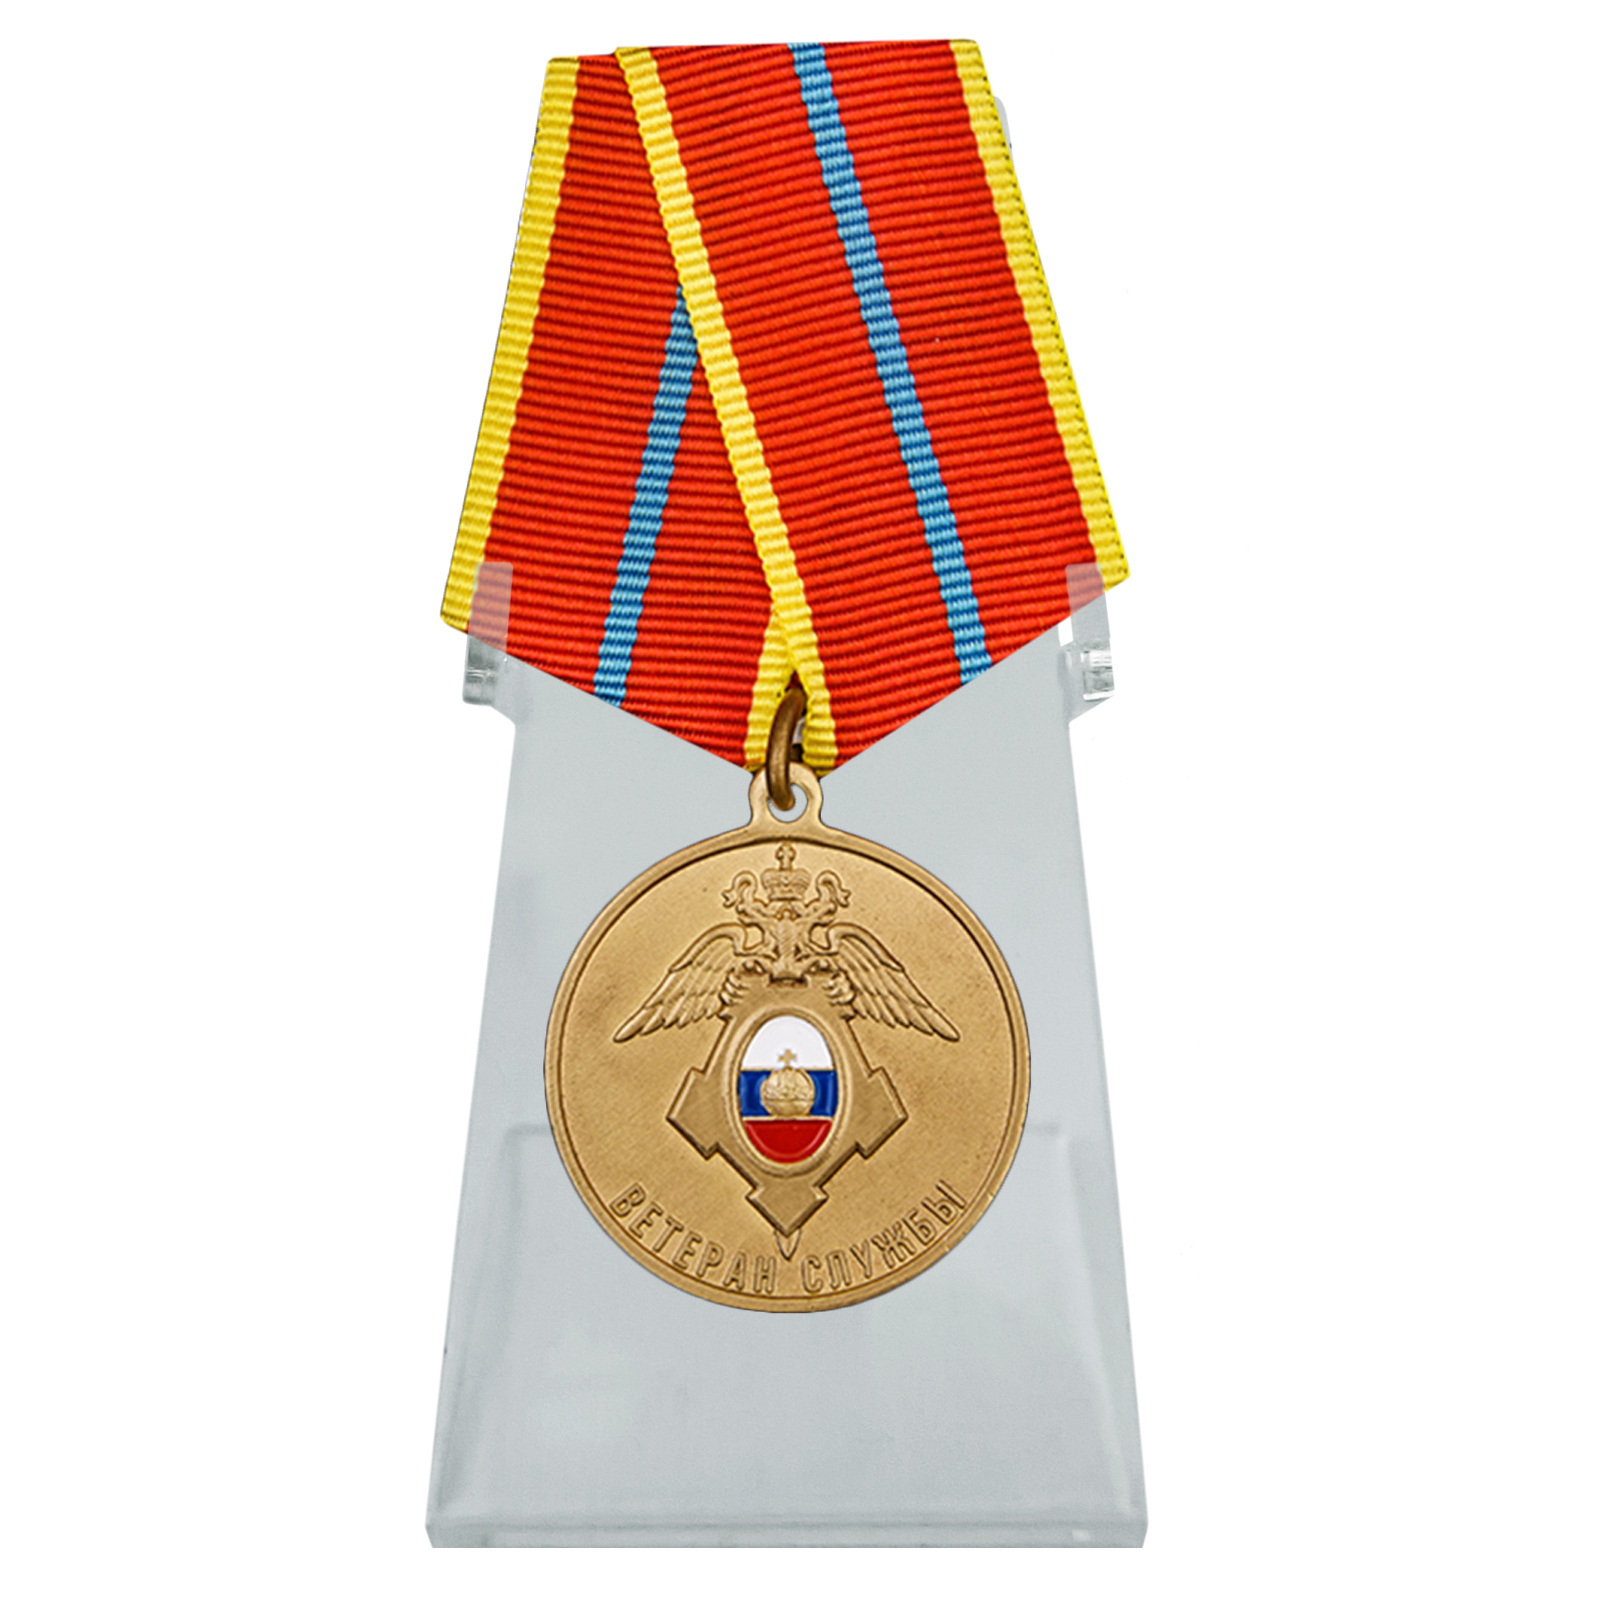 Купить медаль Ветеран службы ГУСП на подставке в подарок онлайн